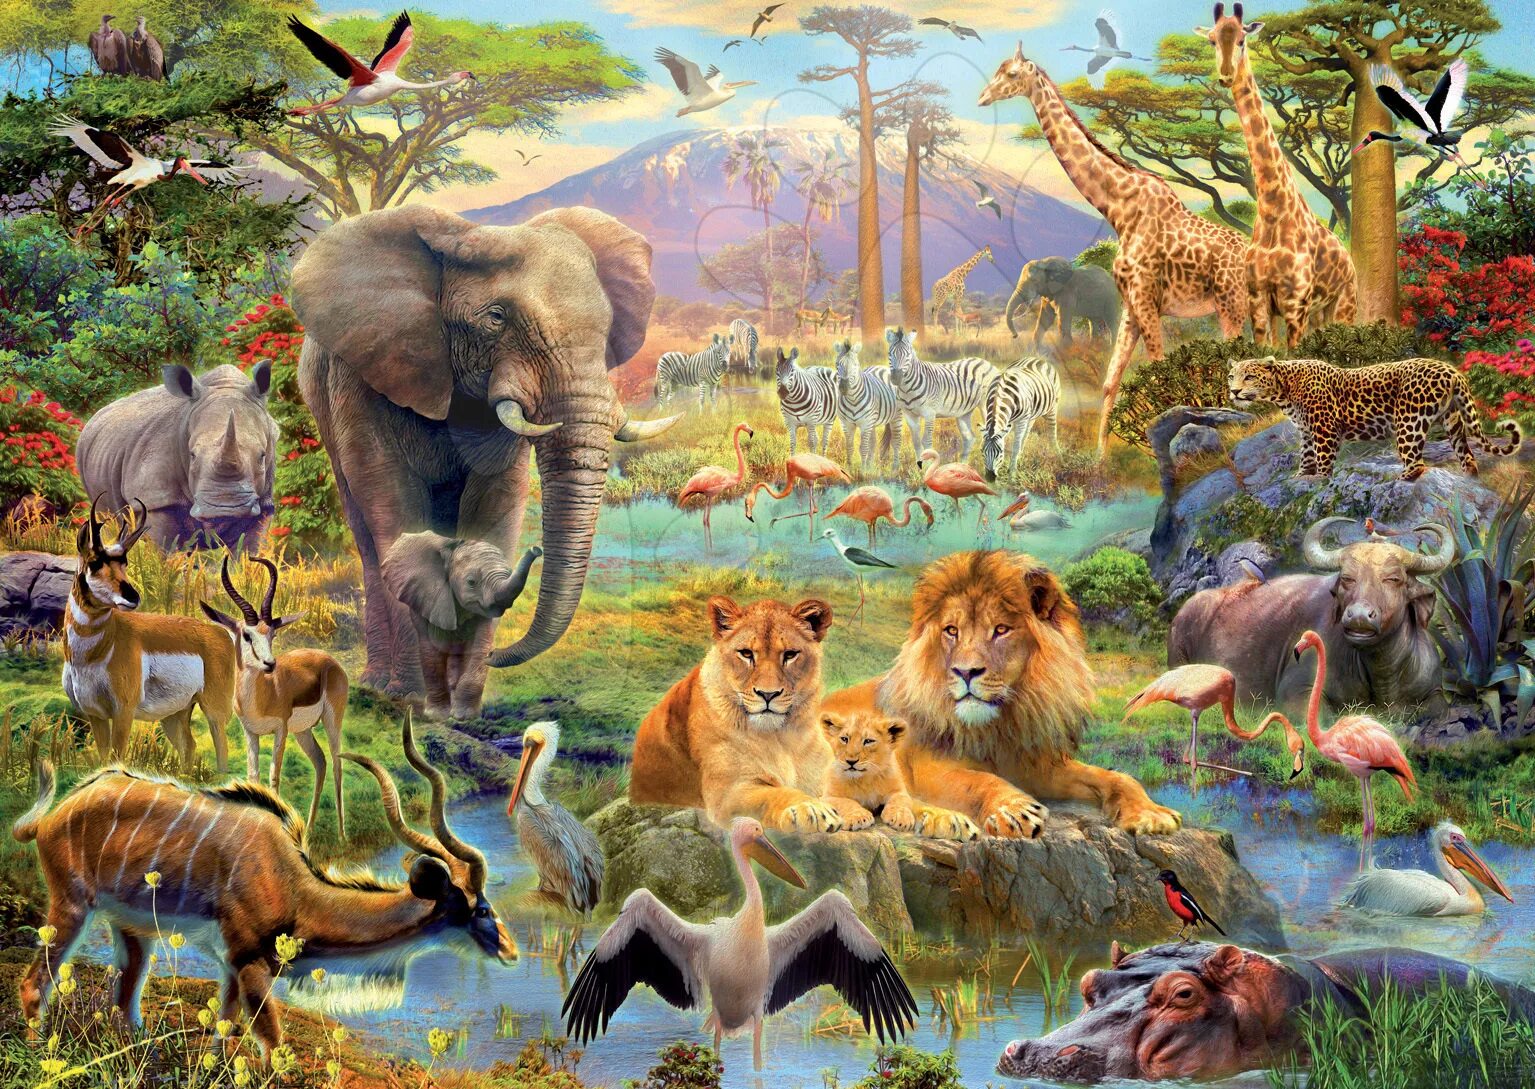 Пазл Саванна Educa. Пазл Ravensburger джунгли (16610), 2000 дет.. Африка пустыня Саванна джунгли. Много животных.